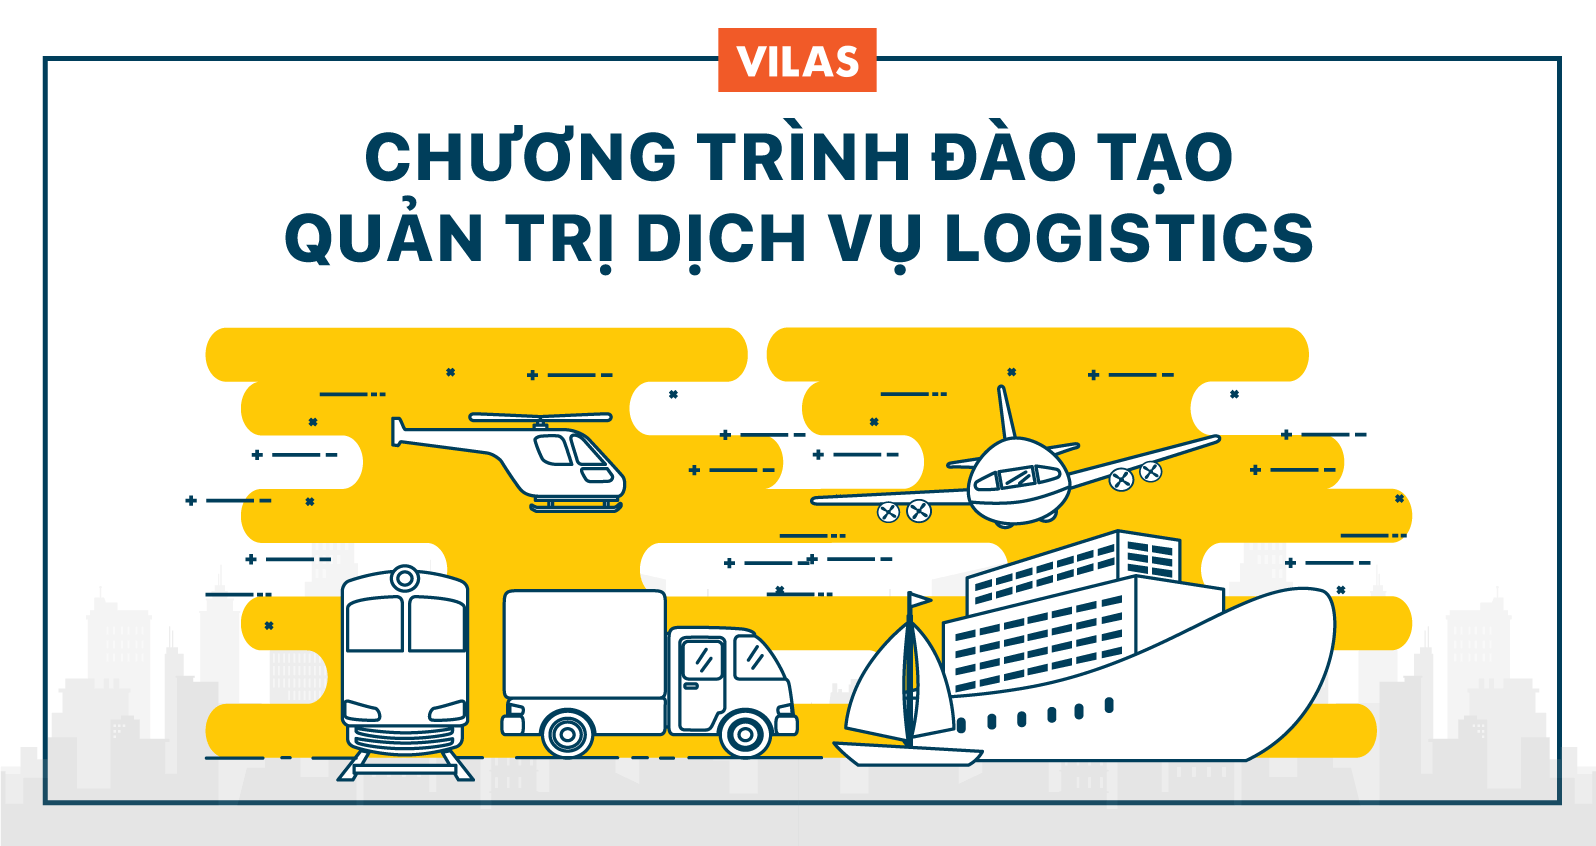 Chương trình đào tạo Quản trị dịch vụ Logistics VILAS